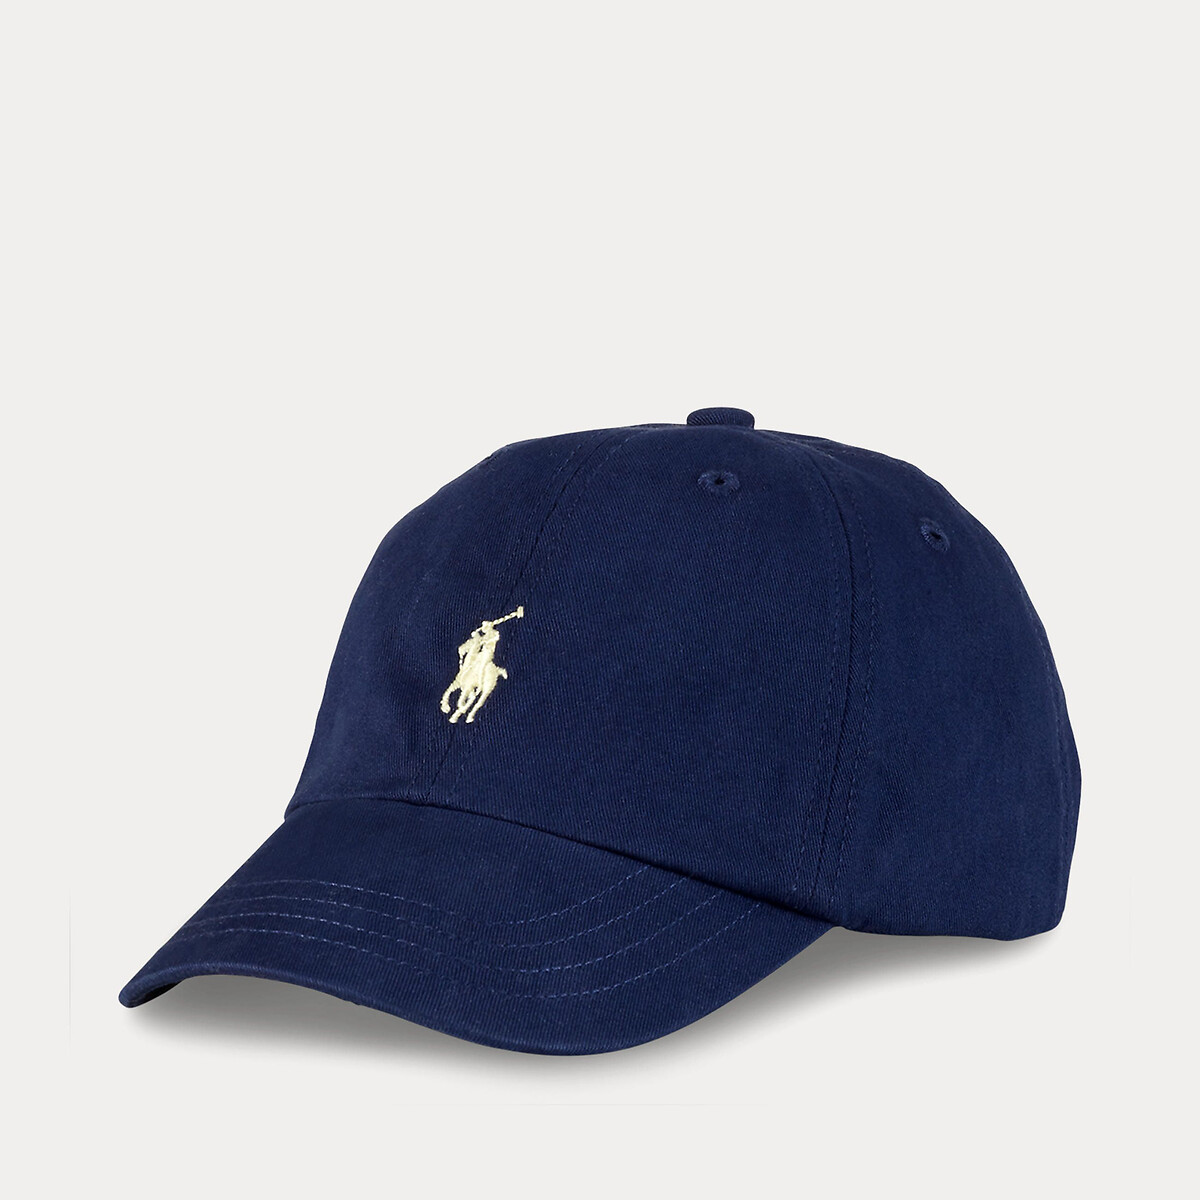 Ralph Lauren Pet Sale Cotton cap, navy blue, Polo Ralph Lauren | La Redoute